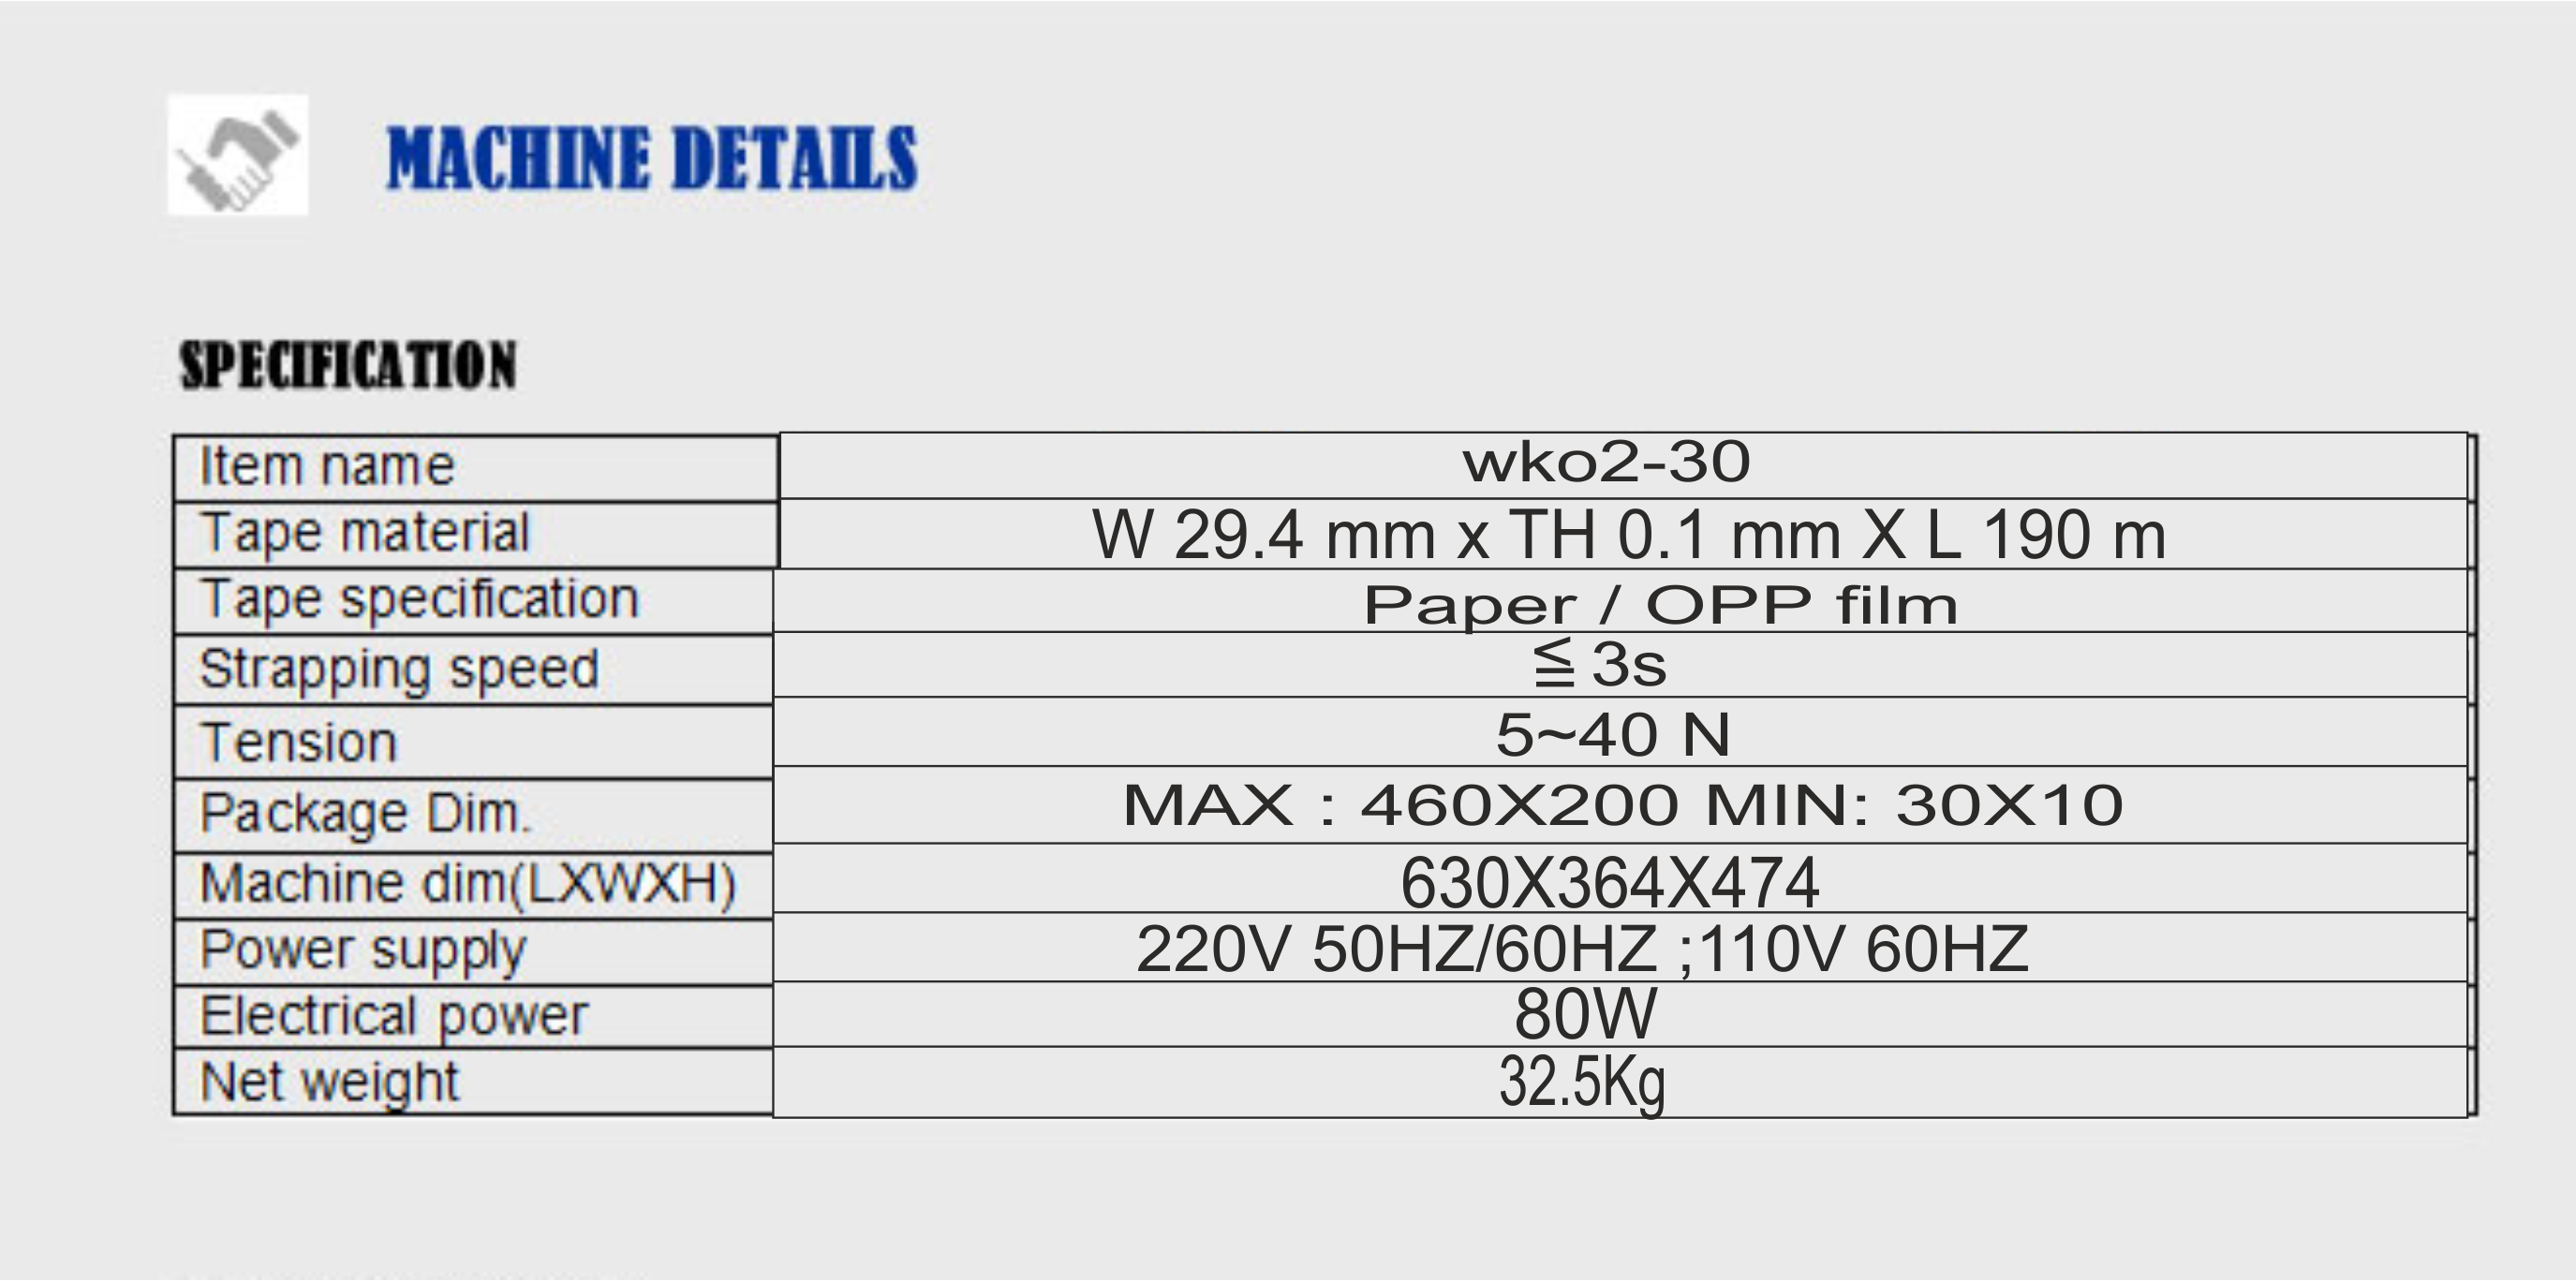 مشخصات دستگاه باندینگ پک مدل WK 02-30 
گروه سیناپک 66956030-021